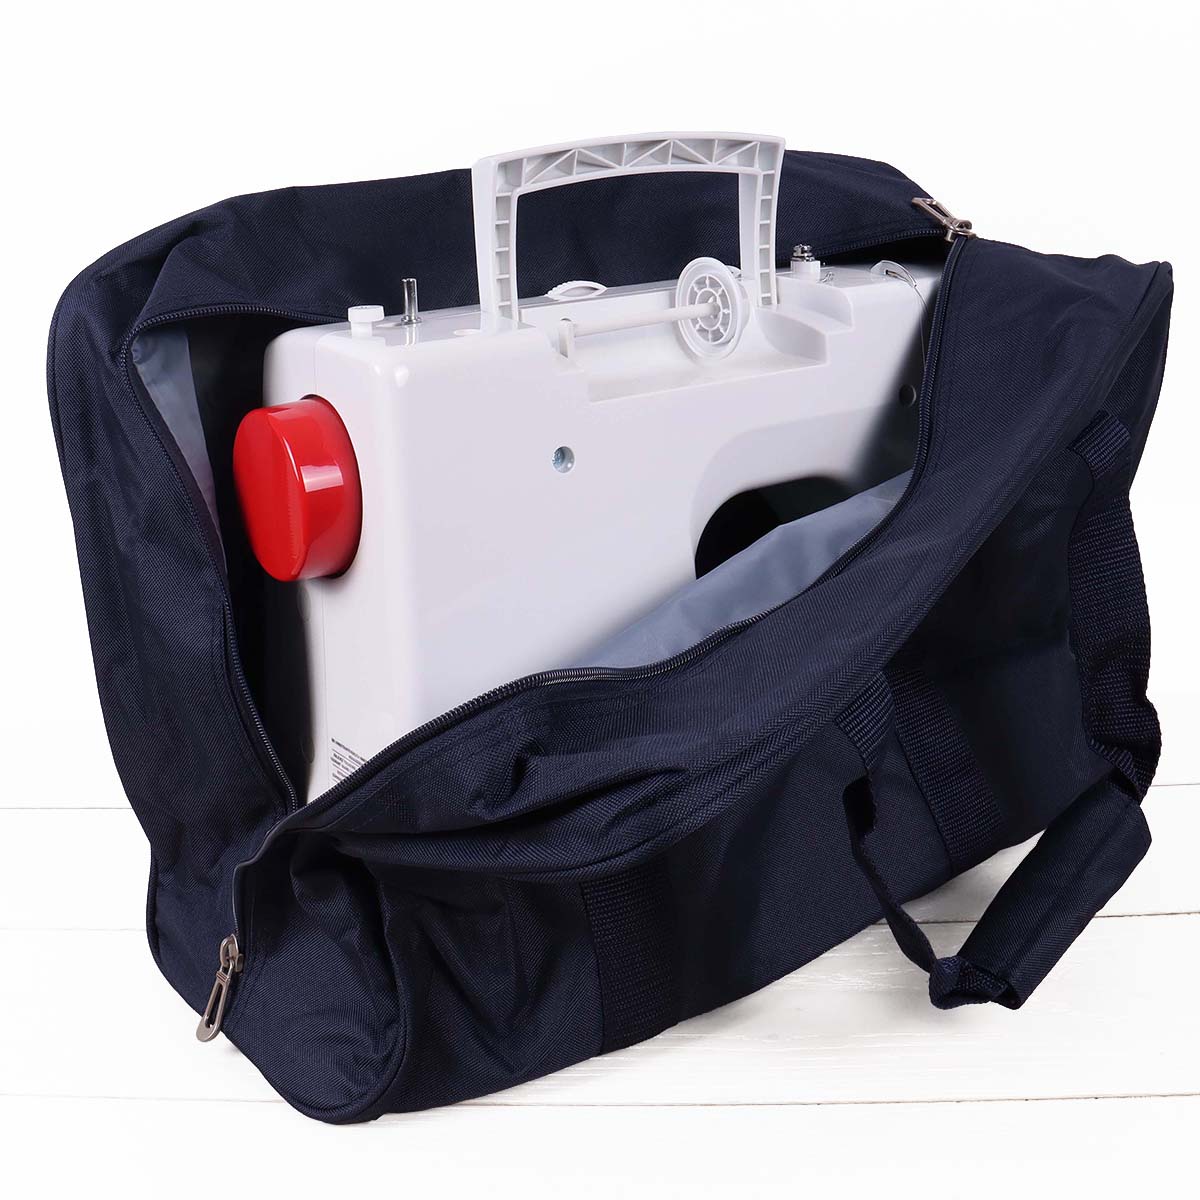 Sewing Machine Bag - Navy